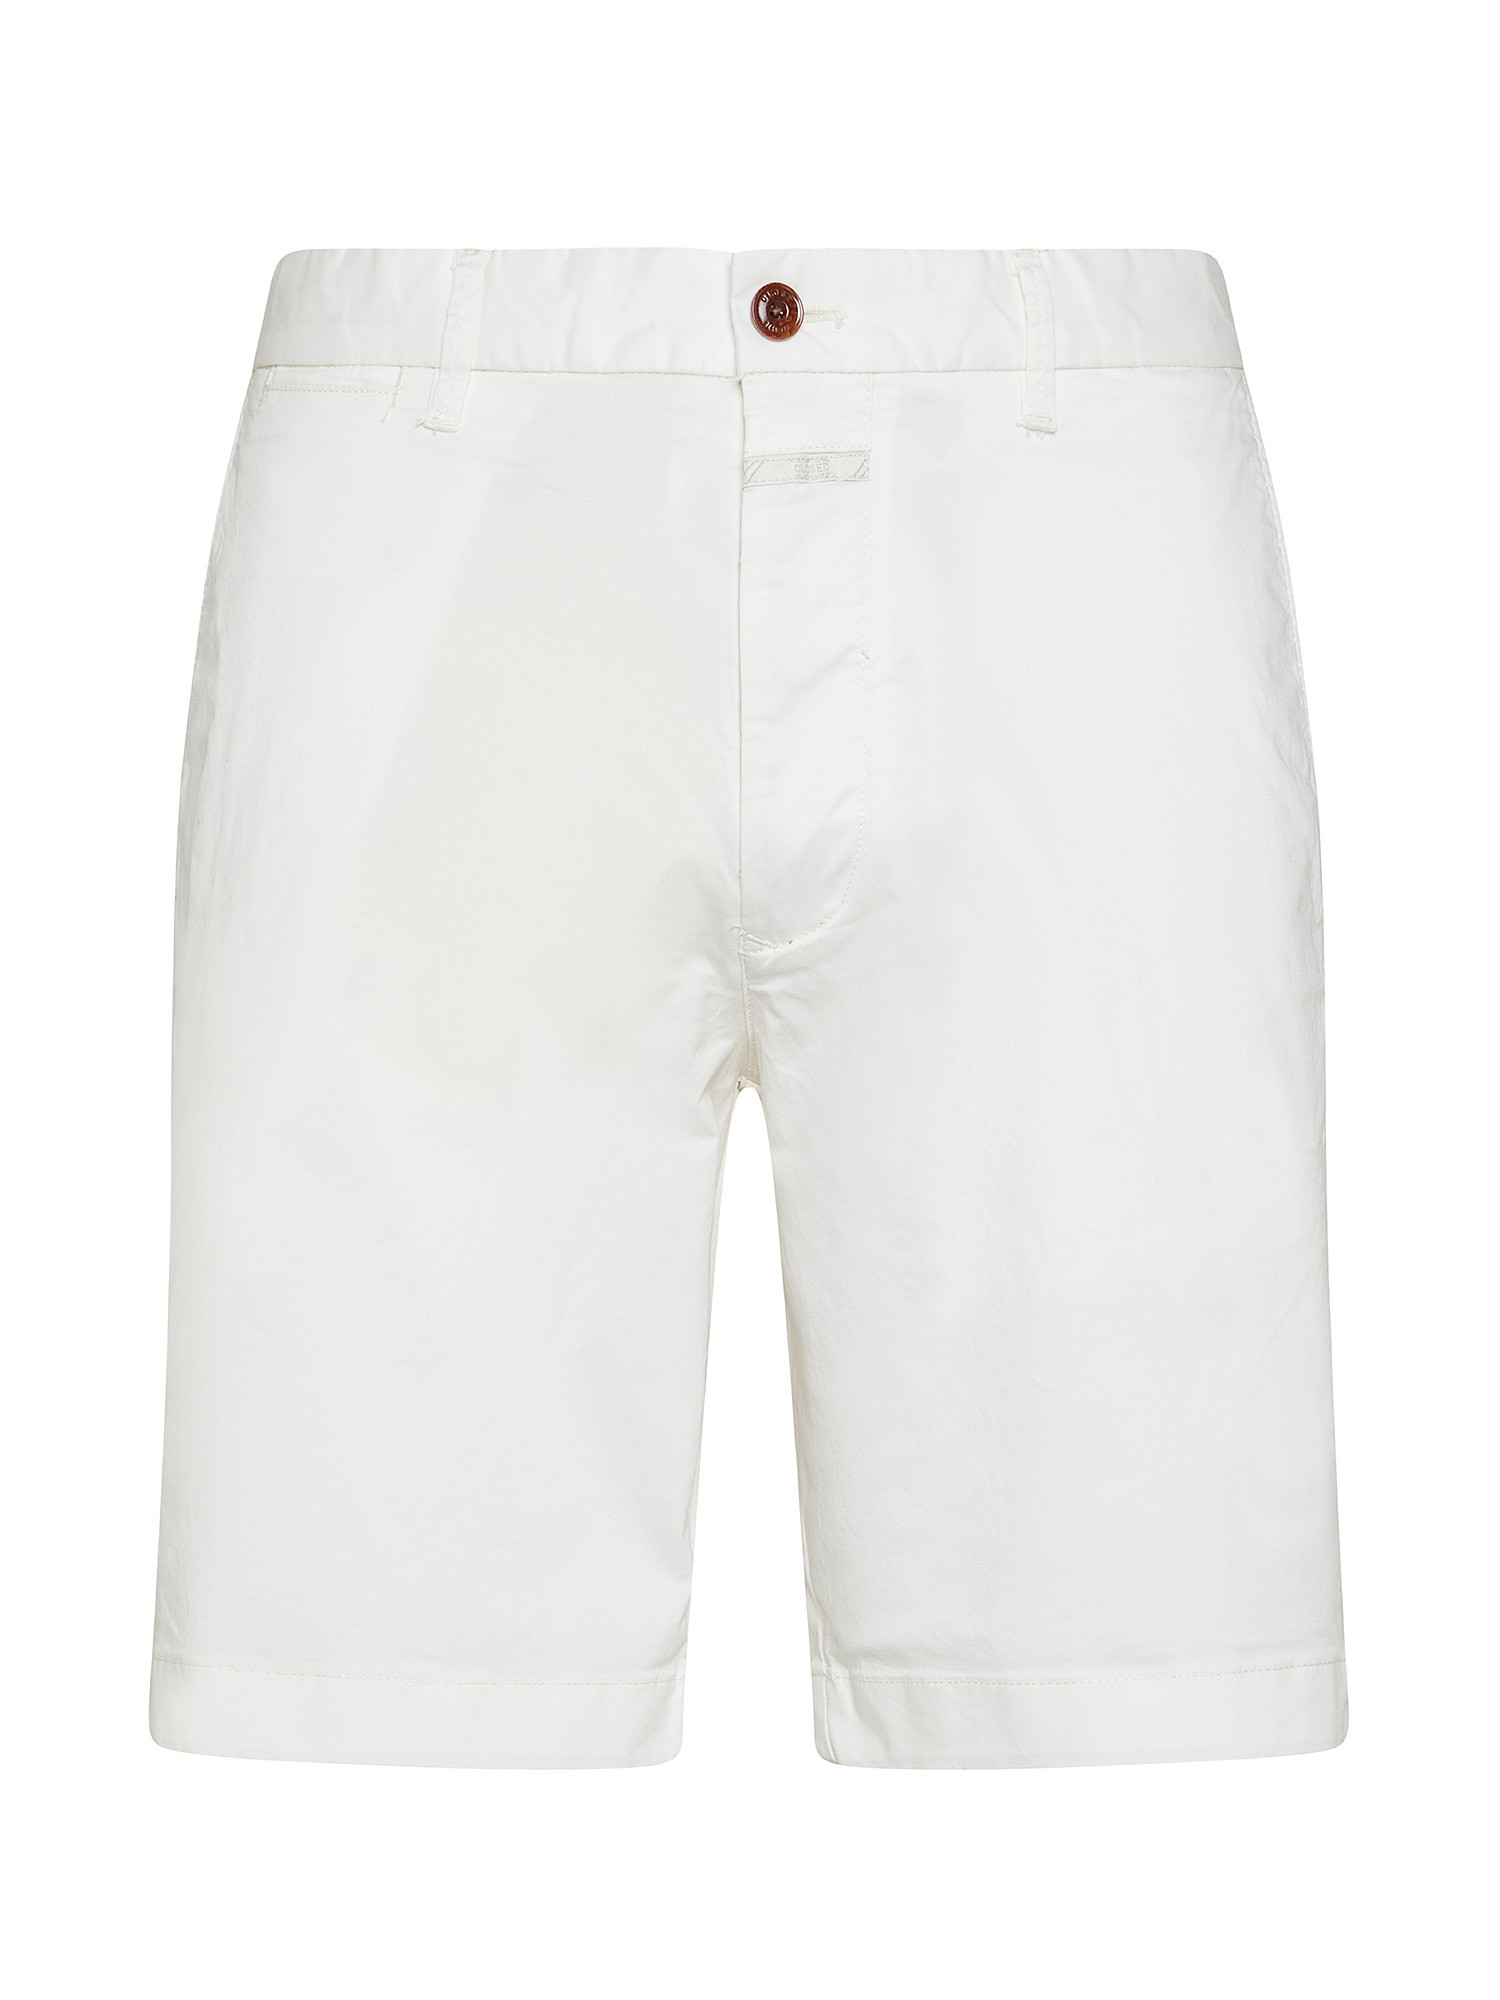 Chino shorts, White Ivory, large image number 0